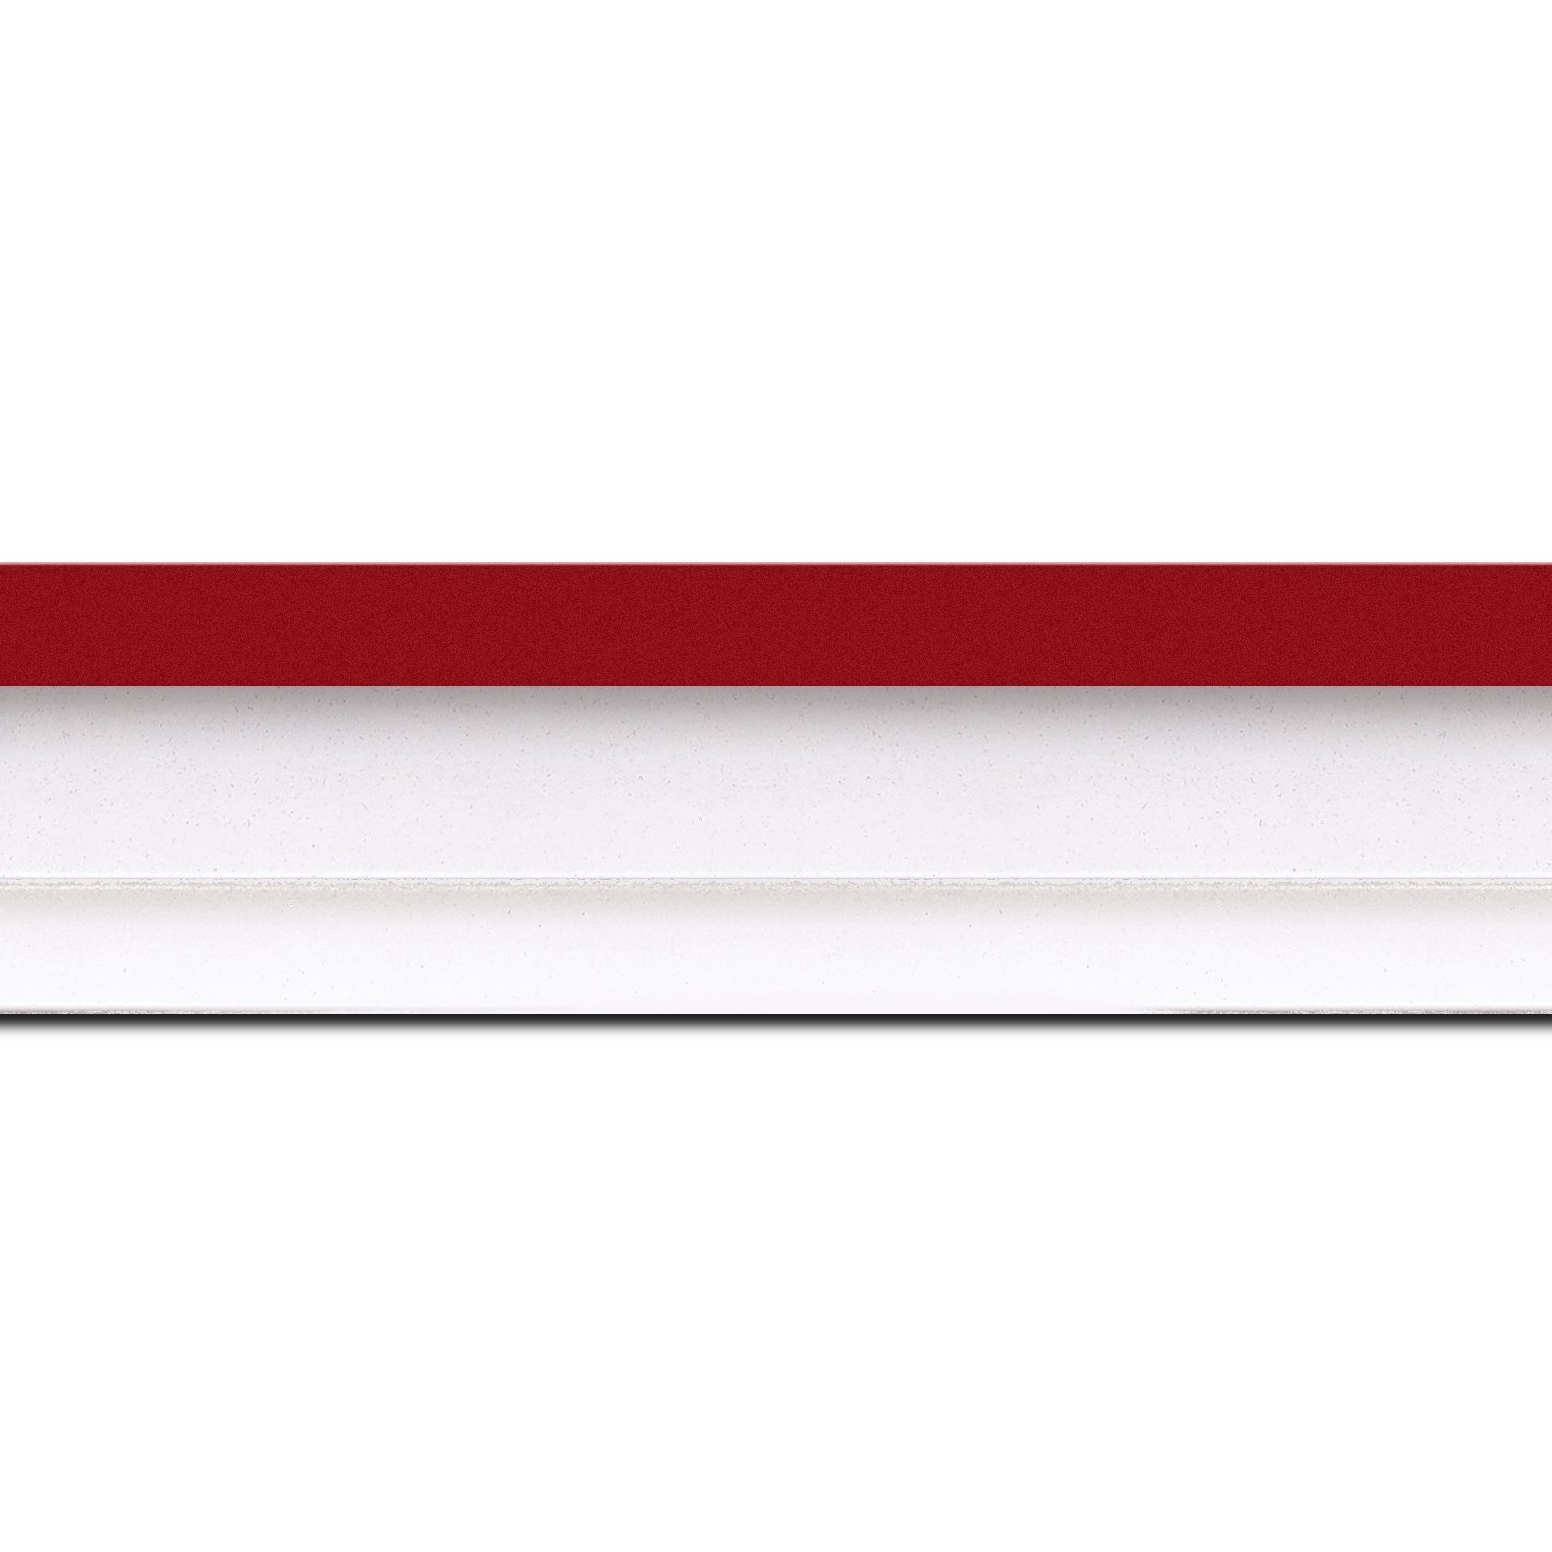 Caisse américaine pour peintures  americaine bois blanc rouge — 81 x 60